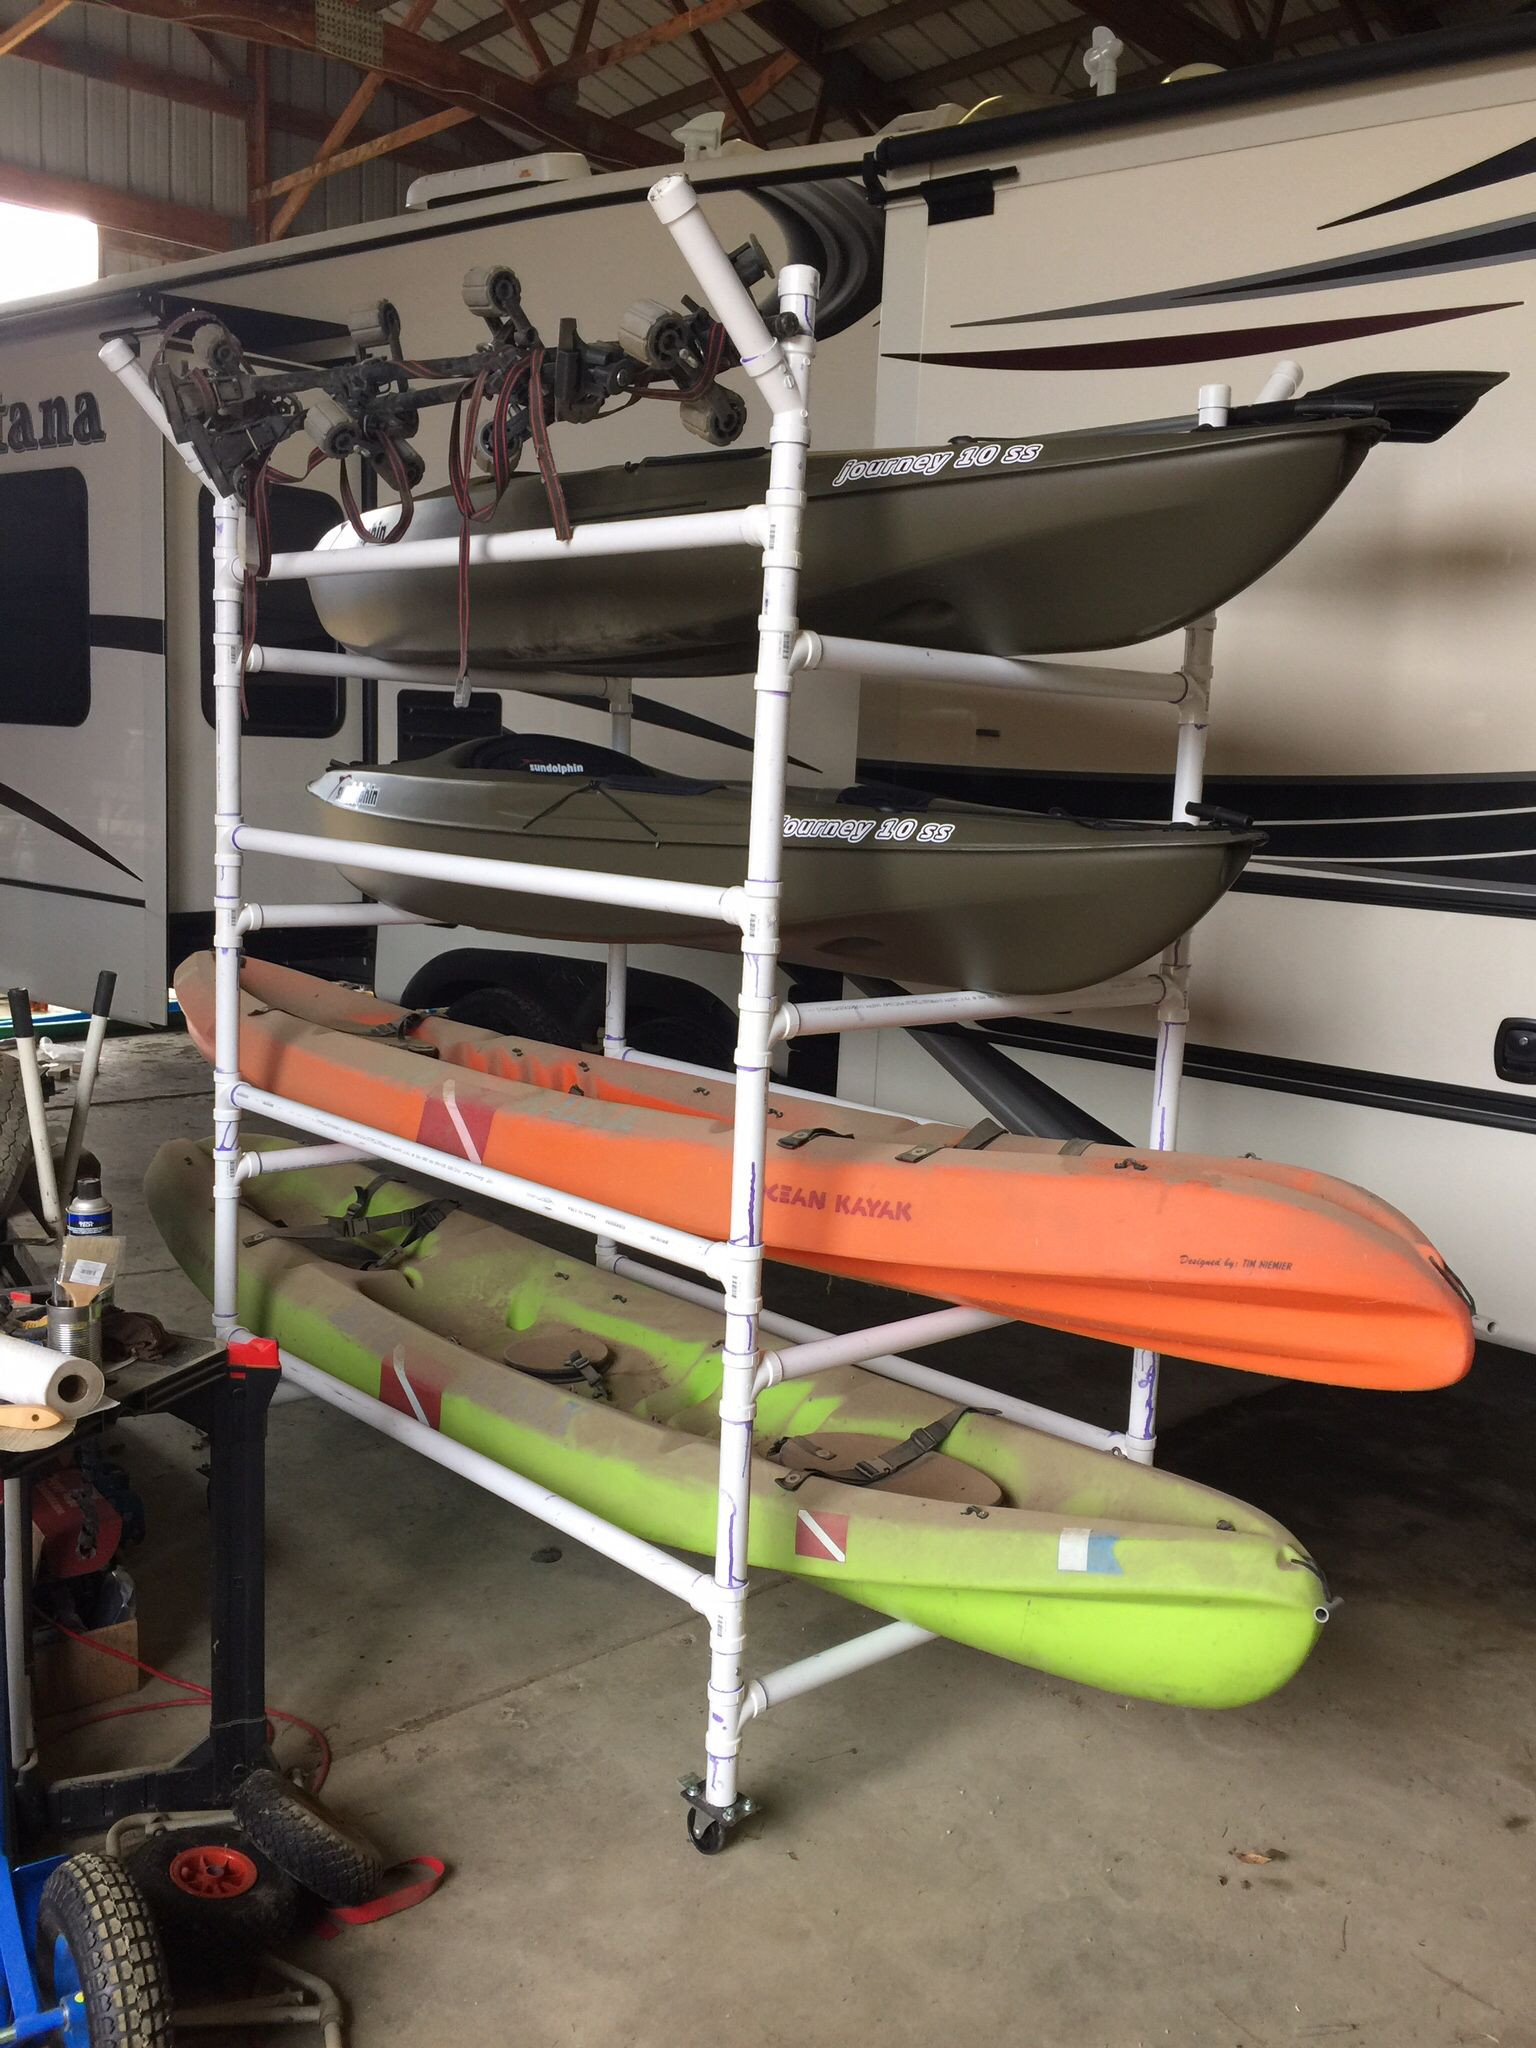 Best ideas about DIY Kayak Storage Racks
. Save or Pin Homemade PVC kayak rack can store 4 kayaks paddles Now.